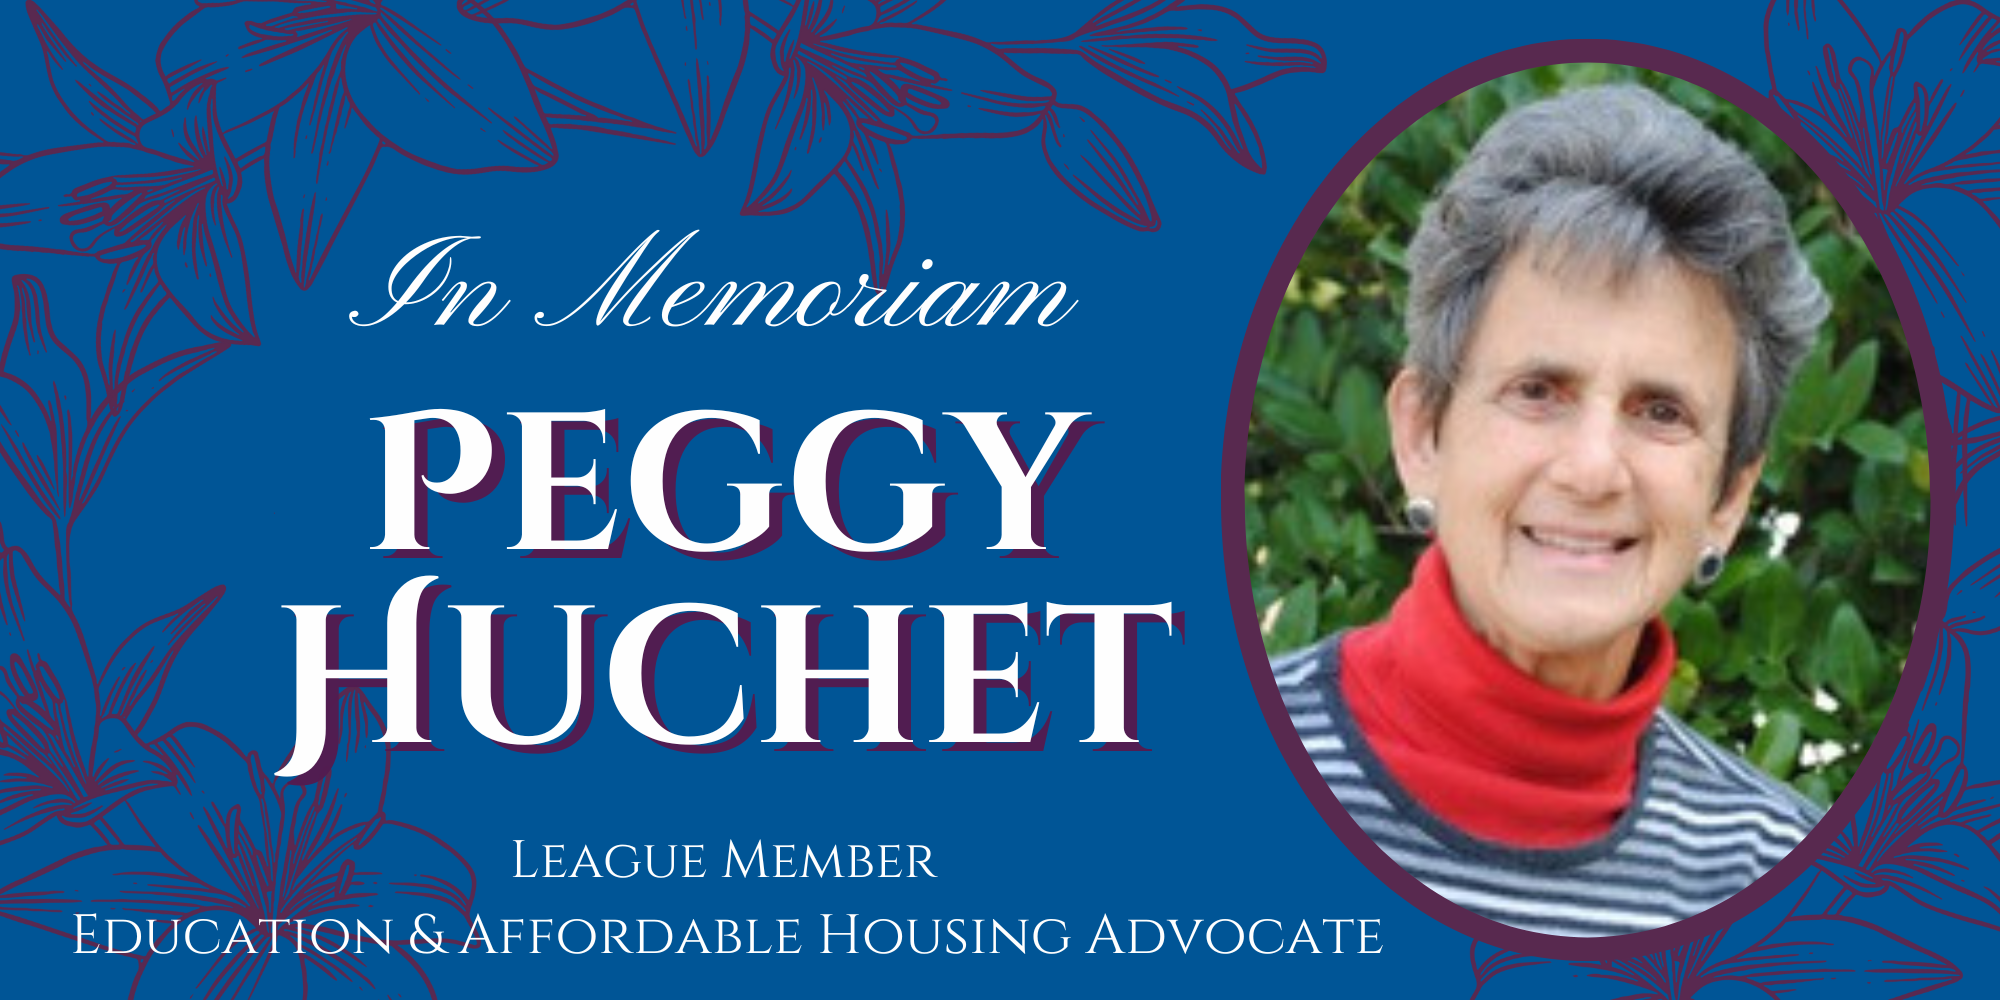 In Memoriam for Peggy Huchet